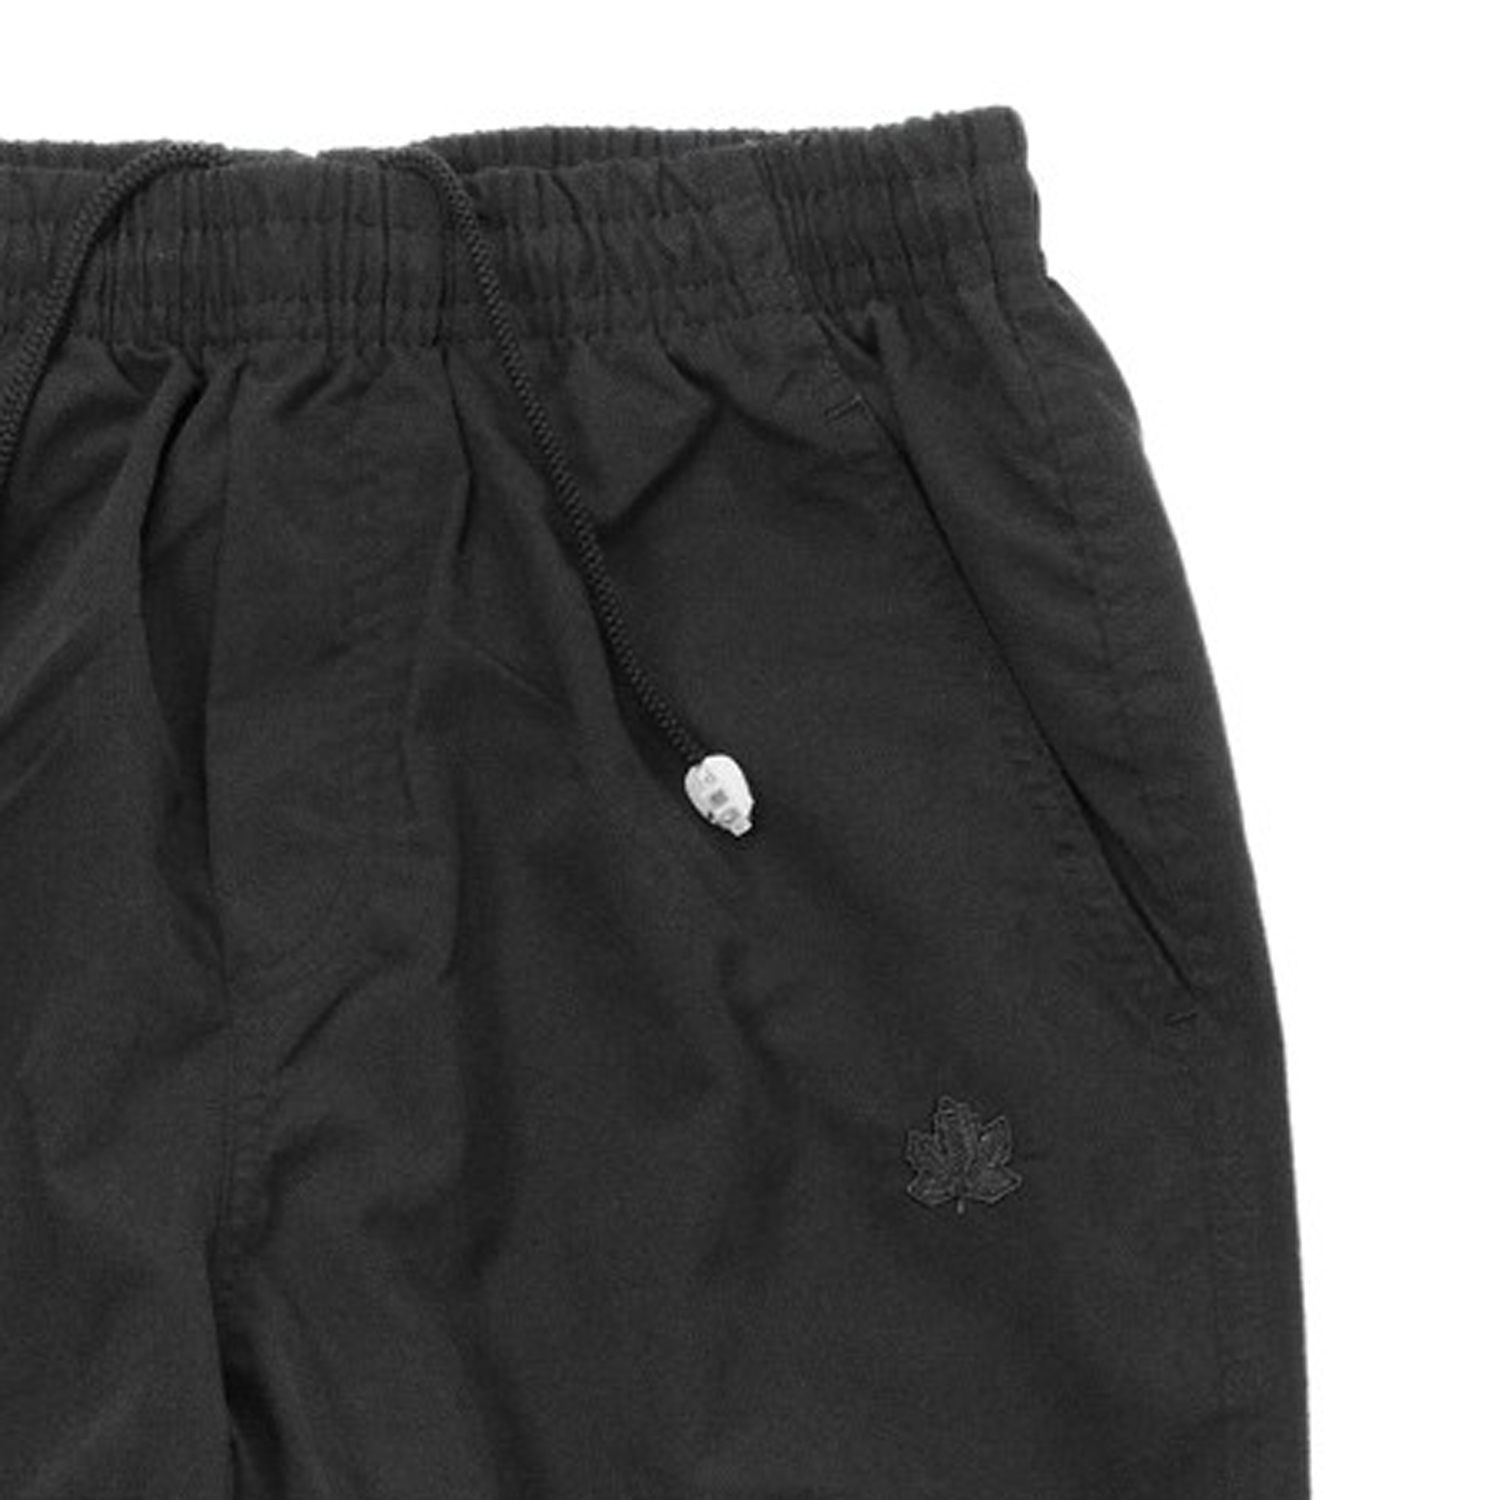 Schwarze Herren Micro Fitness Hose von Ahorn Sportswear in Übergrößen bis 10XL